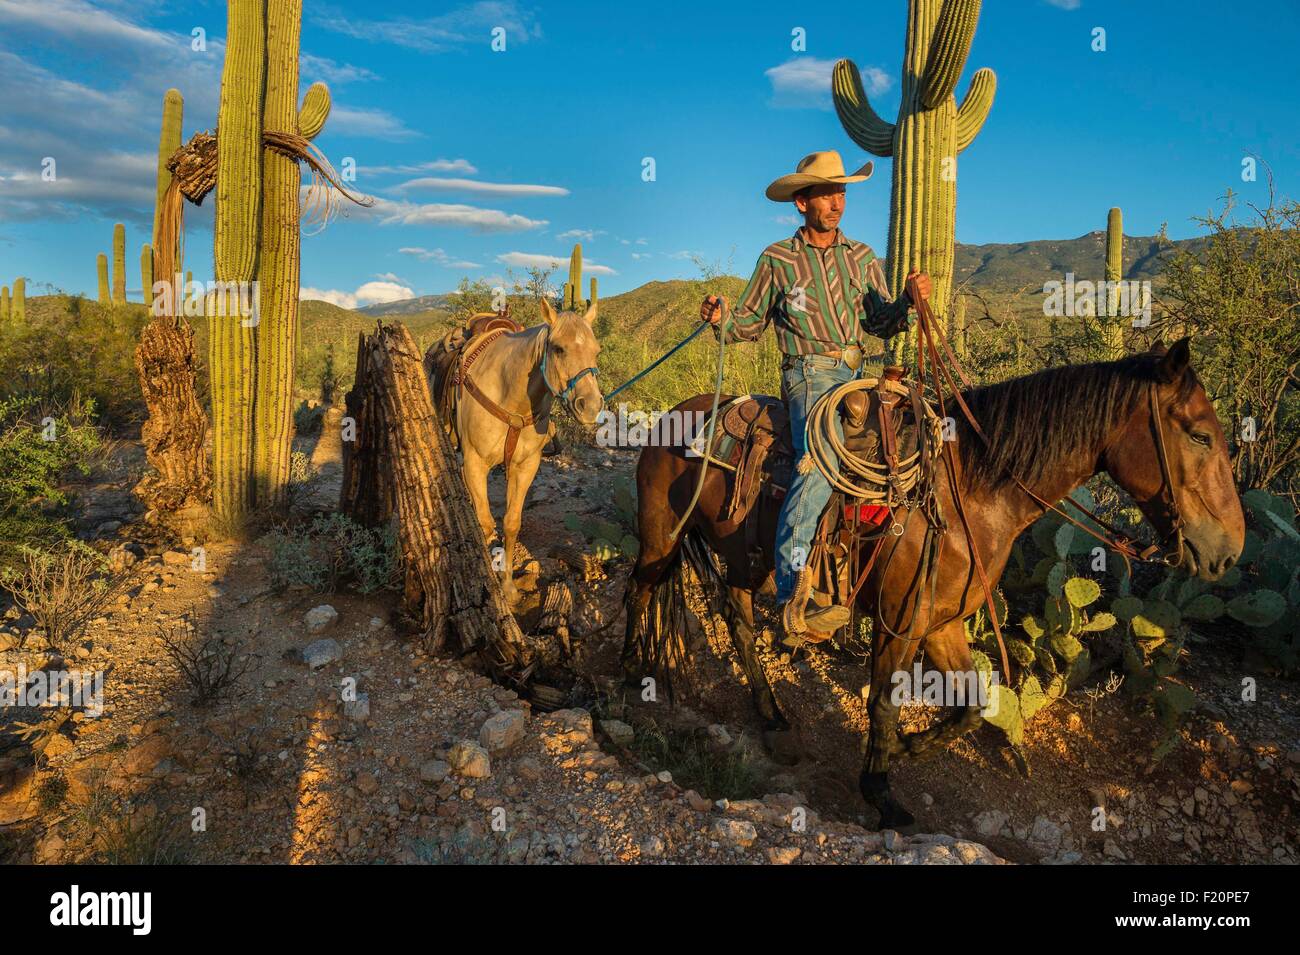 United States, Arizona, Tucson, Saguaro National Park, Tanque verde Ranch, randonnée à cheval au milieu du désert Banque D'Images